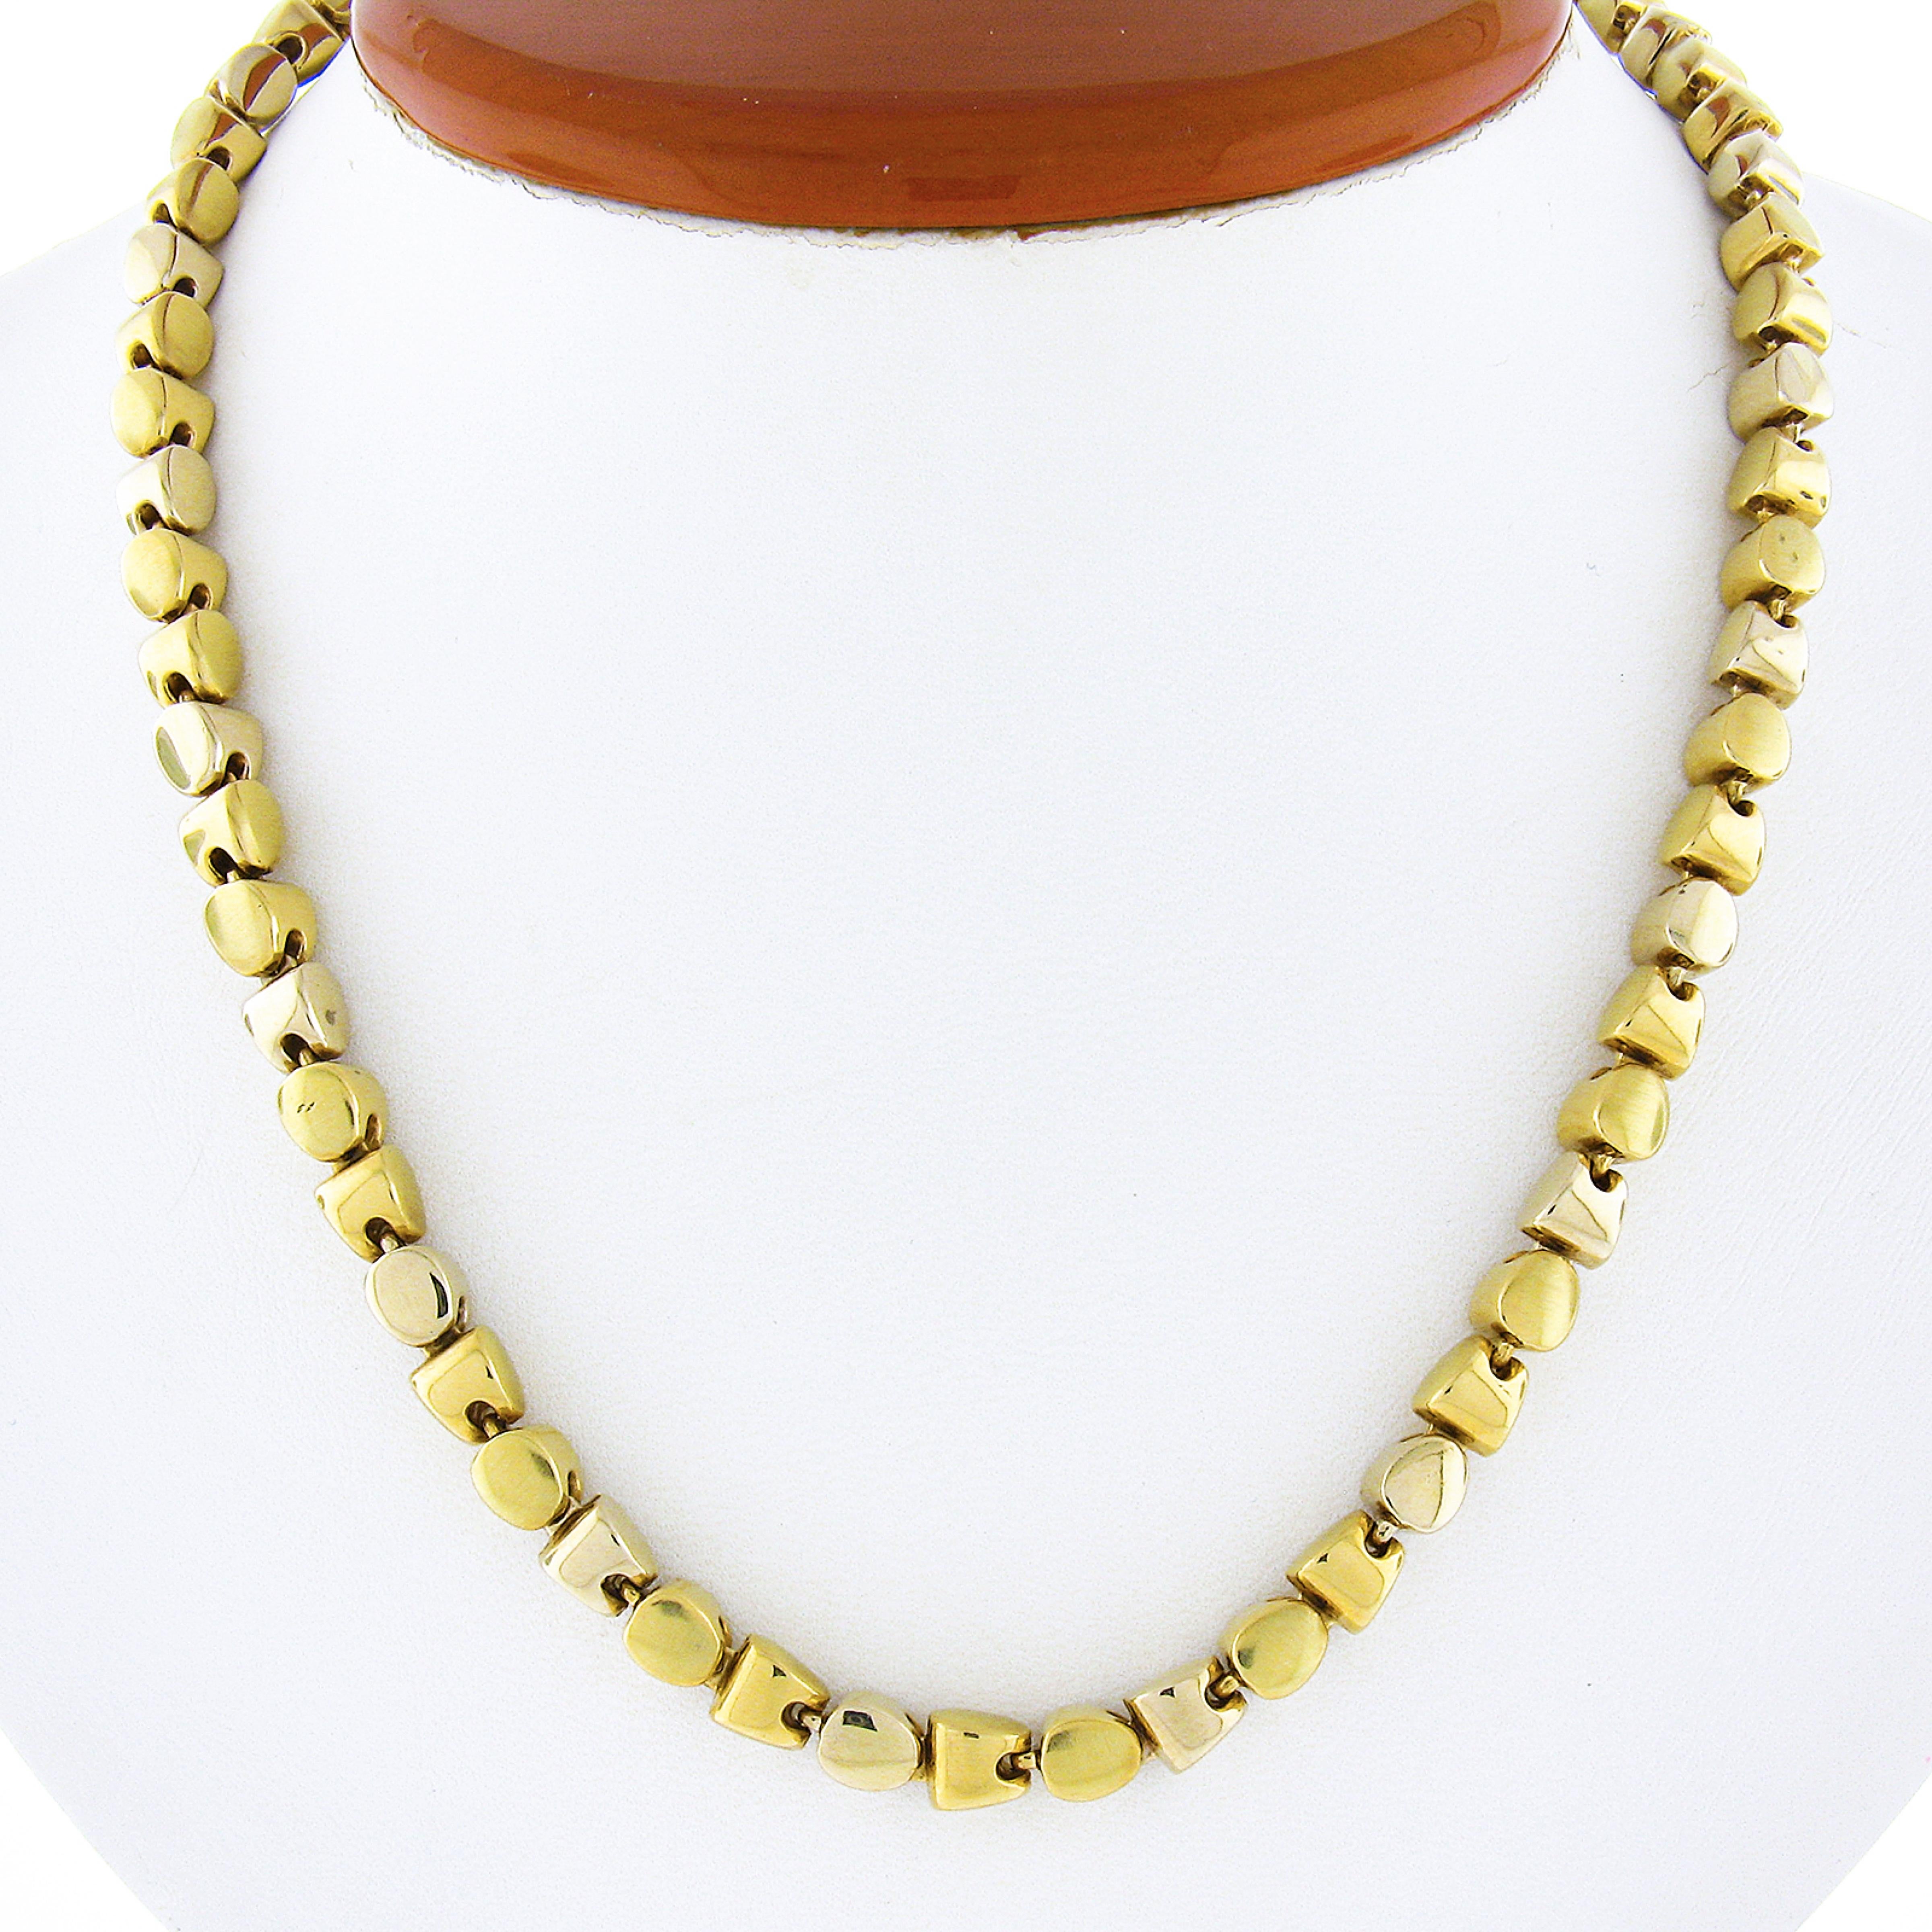 Hier haben wir eine einzigartige Halskette, die aus massivem 18k Gelbgold gefertigt wurde. Die Kette besteht aus schlichten und eleganten geometrischen Gliedern, die diesem Schmuckstück seinen einzigartigen Look verleihen. Die Glieder sind